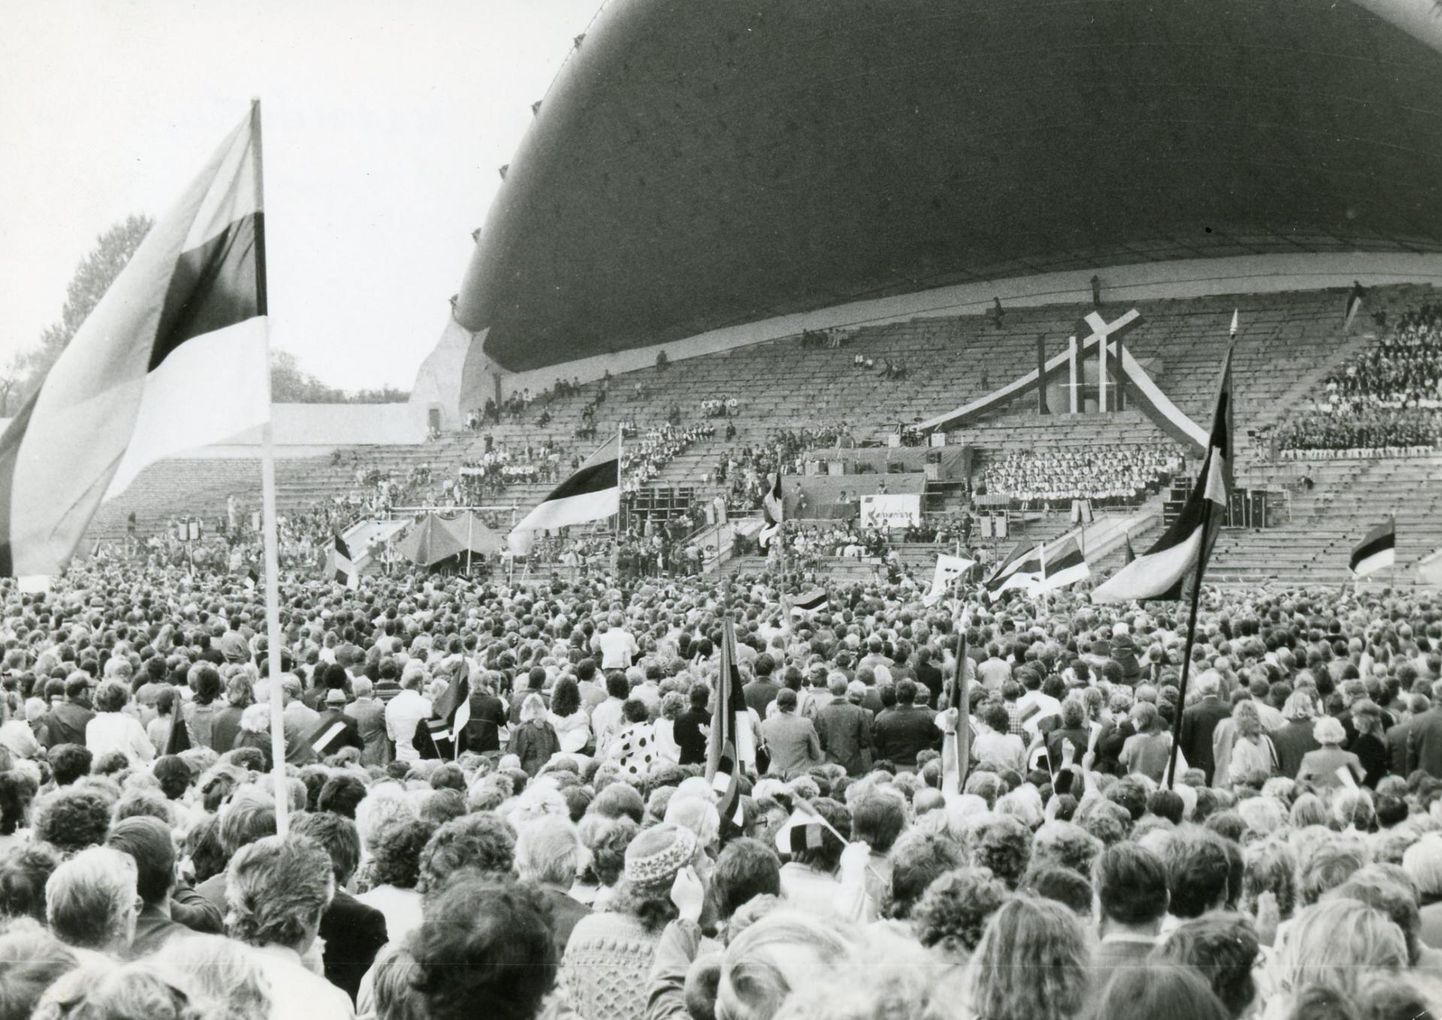 "Eestimaa laul 88" toimus Tallinna lauluväljakul. Aasta hiljem tekkis mõte korraldada jätkupidu Rakveres Vallimäel, kuid sellest plaanist siiski loobuti.